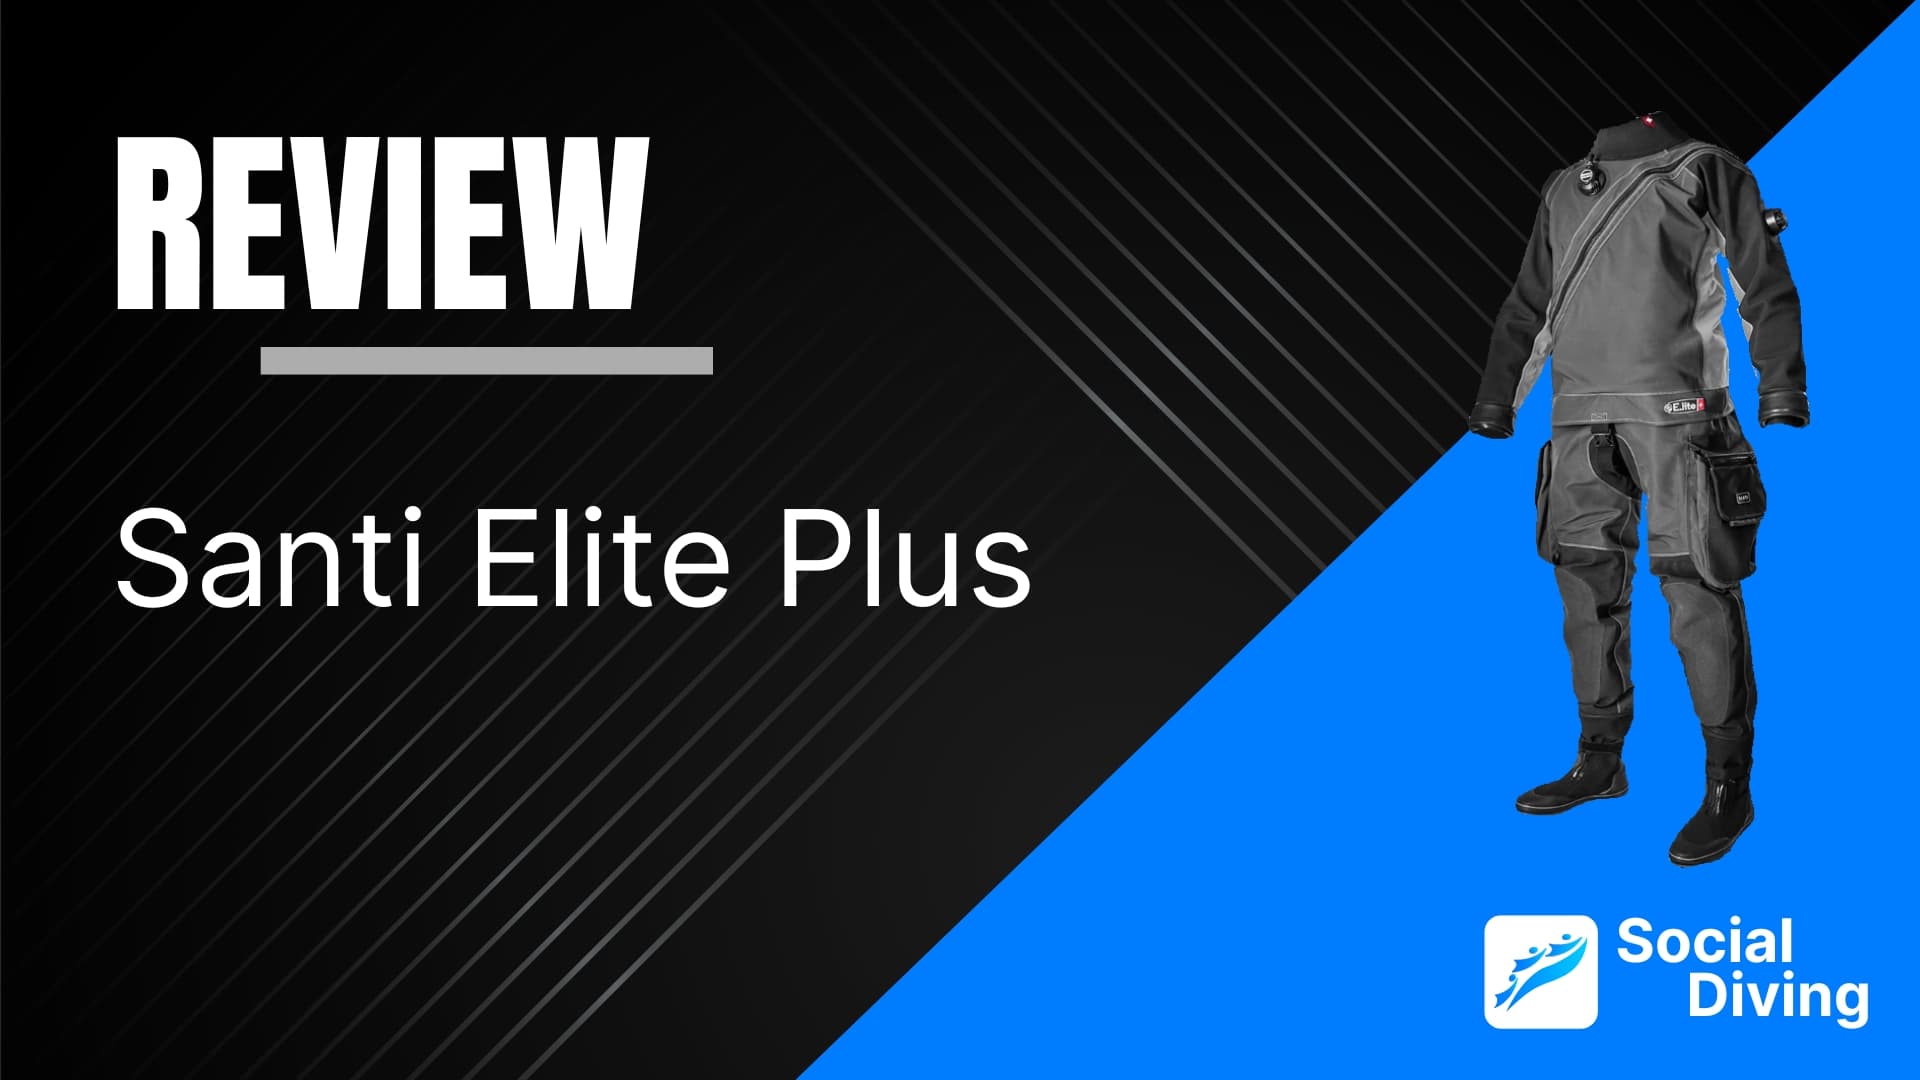 Santi Elite Plus review